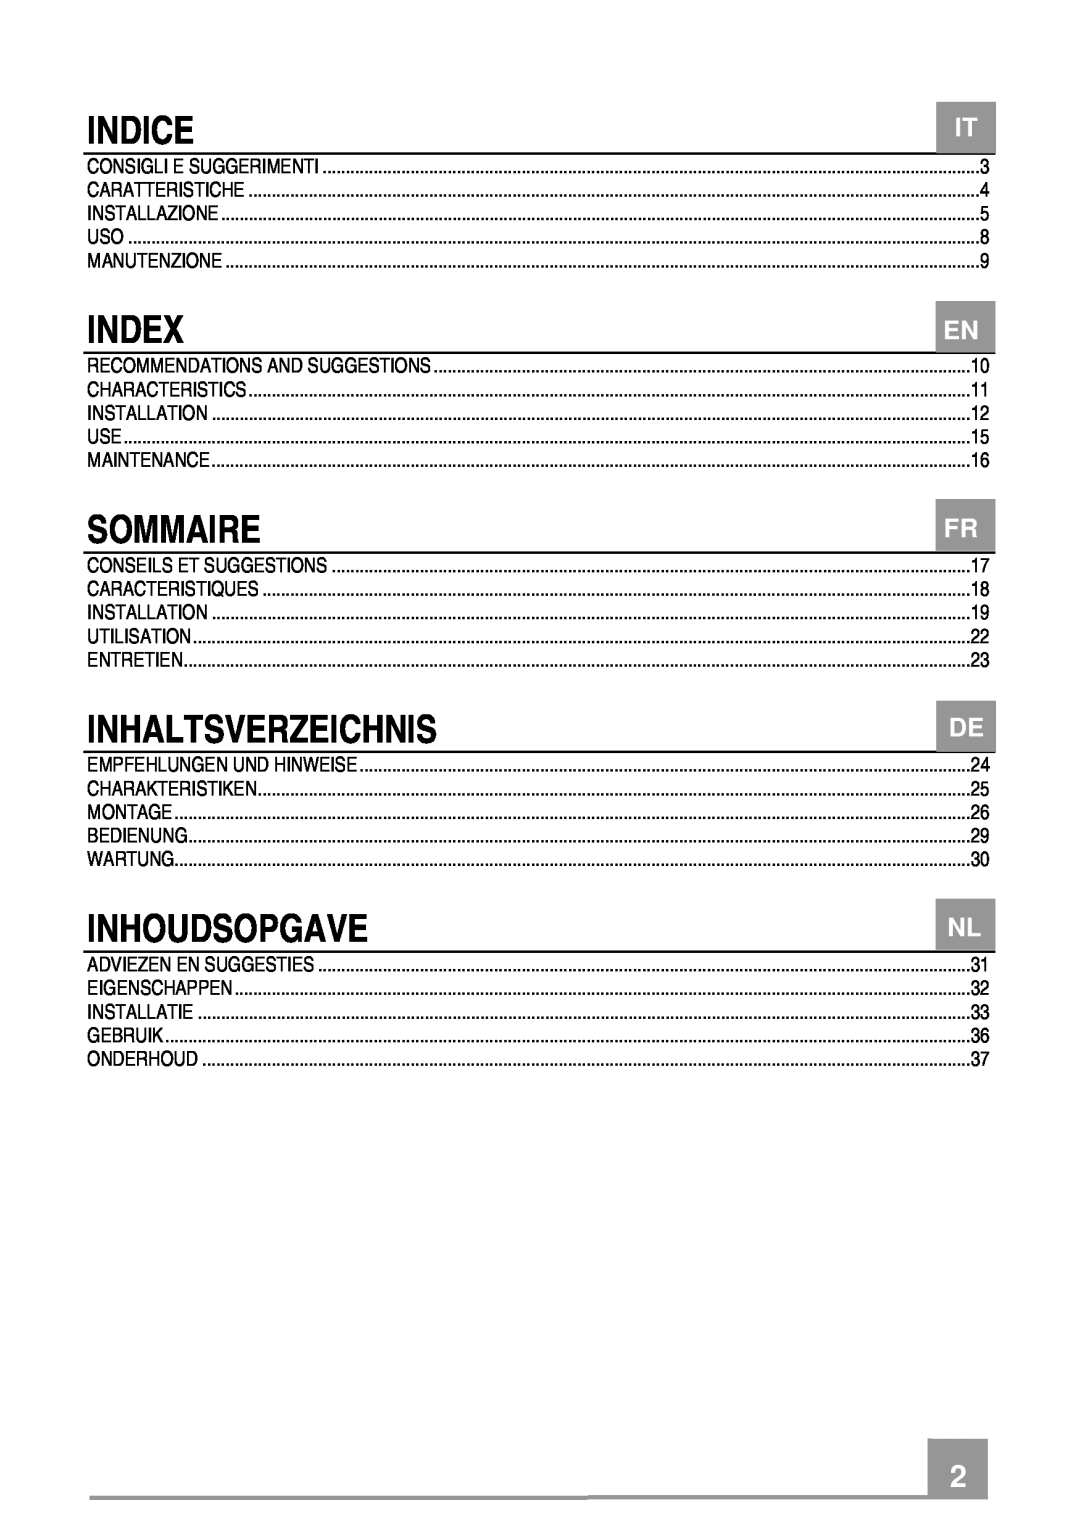 Rangemaster Chimney Hood manual Indice, Index, Sommaire, Inhaltsverzeichnis, Inhoudsopgave 